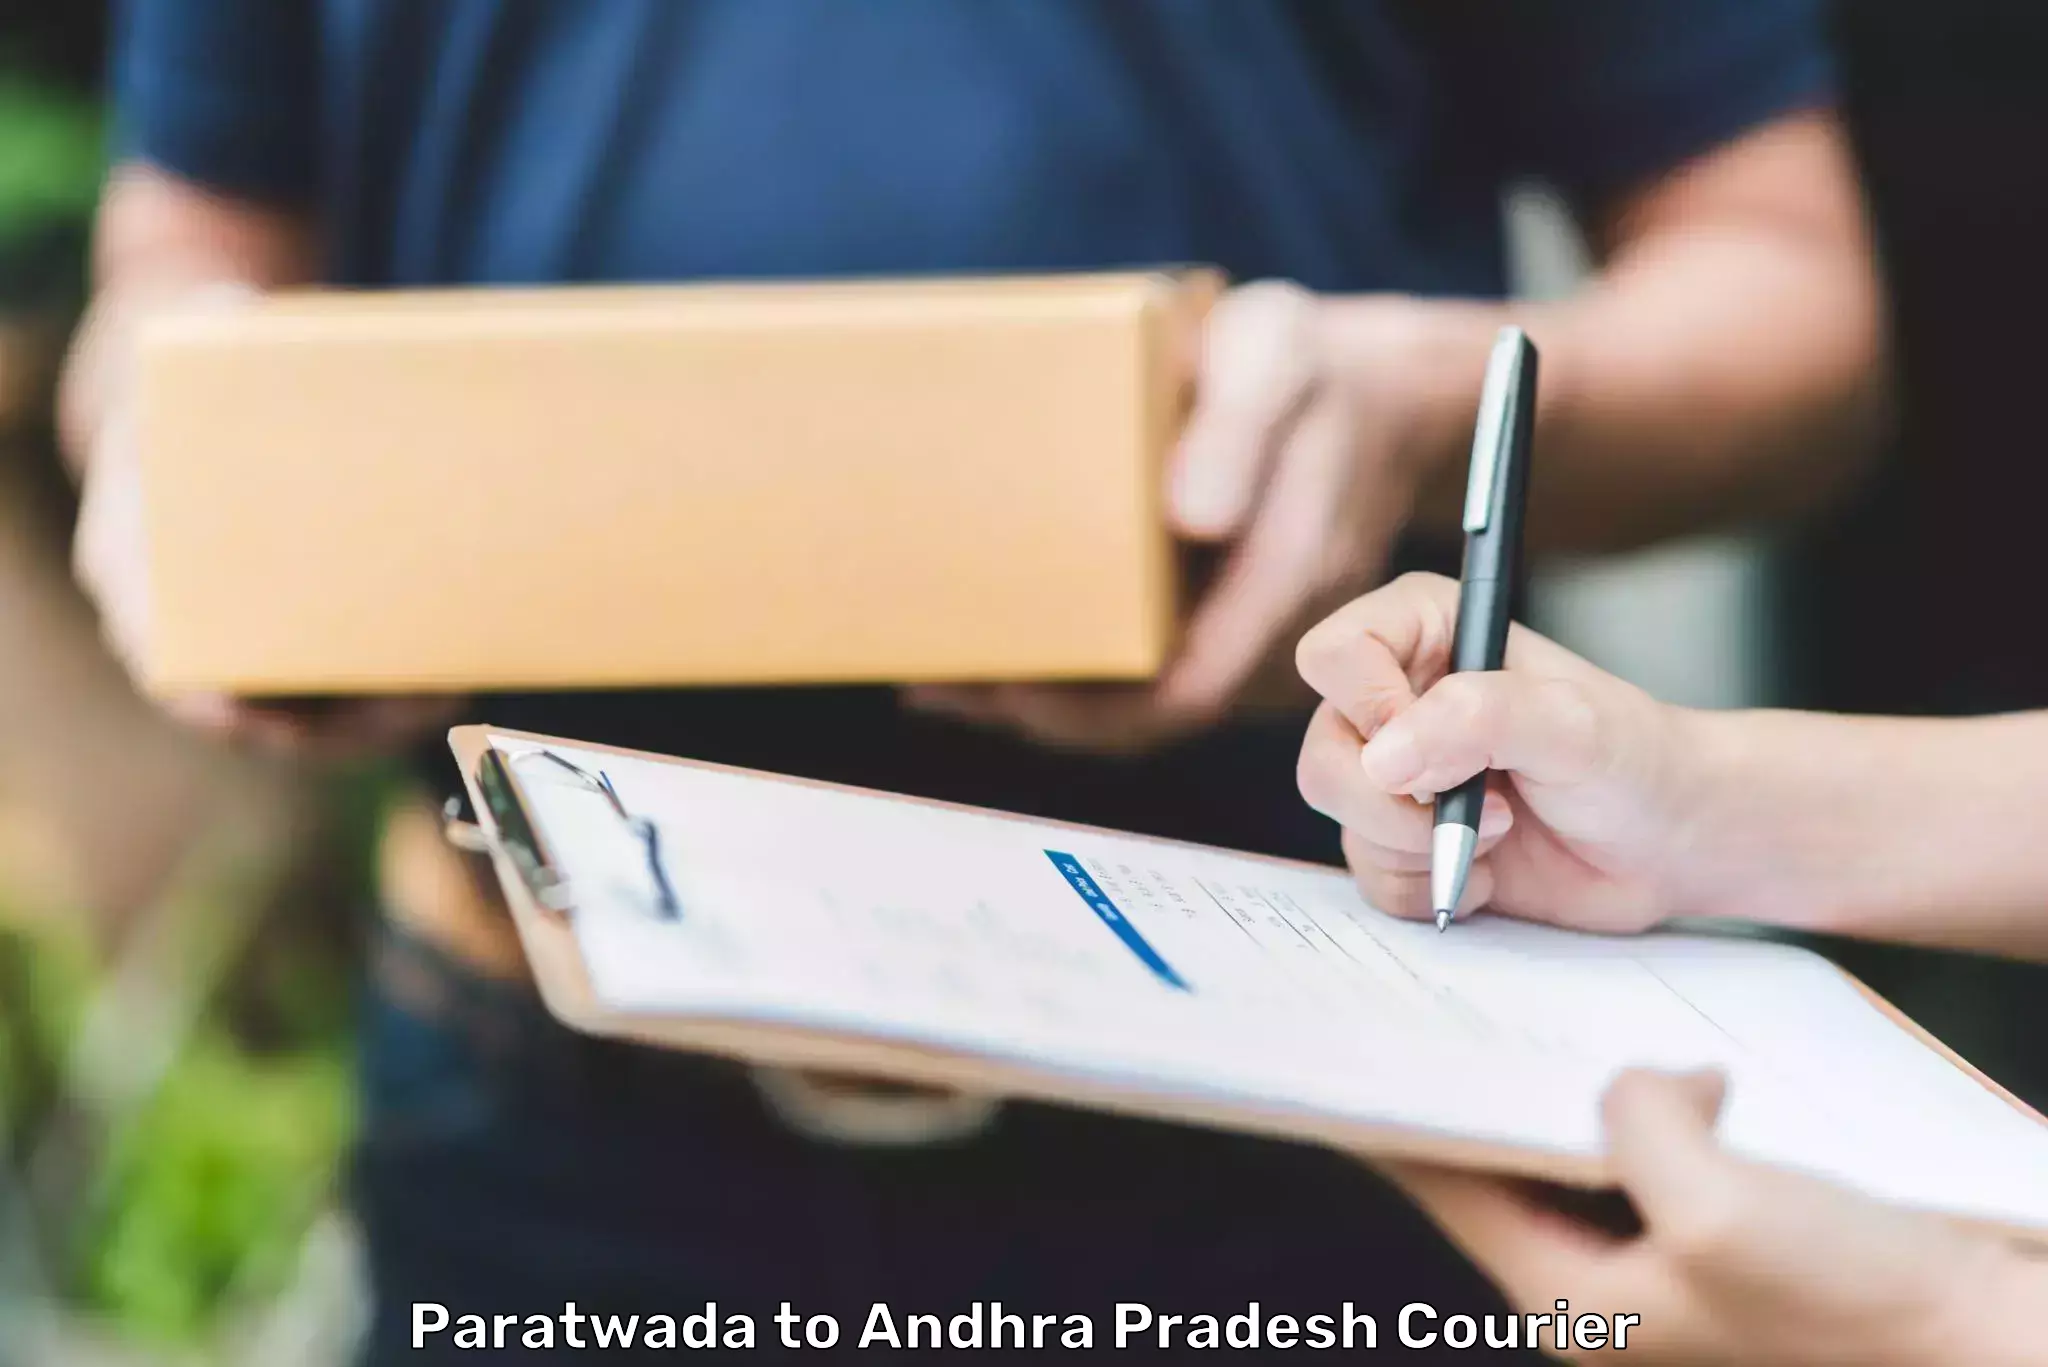 Urgent courier needs Paratwada to Jangareddygudem